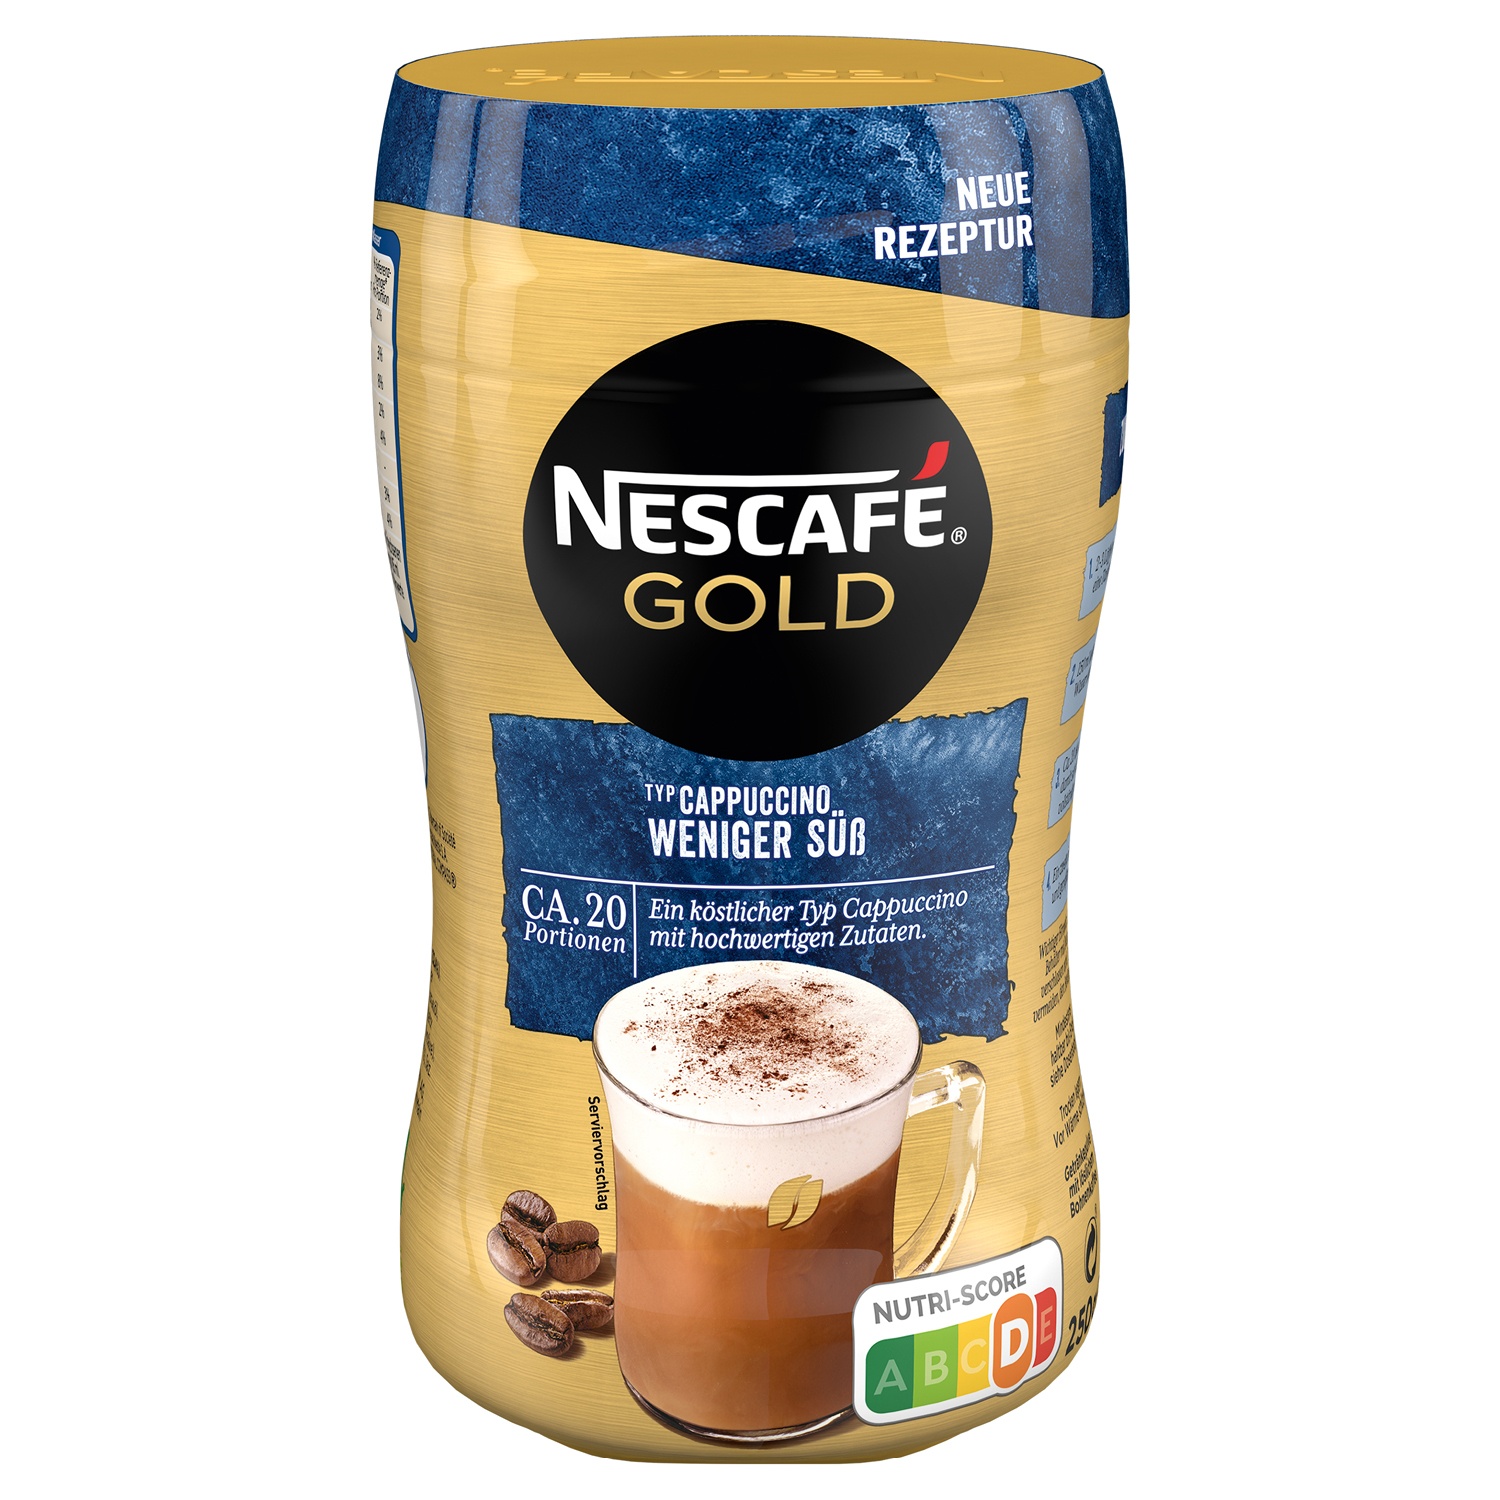 Nescafe gold barista style. Nescafe Gold Cappuccino. Нескафе Голд капучино. Кофейный напиток Nescafe Gold Cappuccino, 225г..